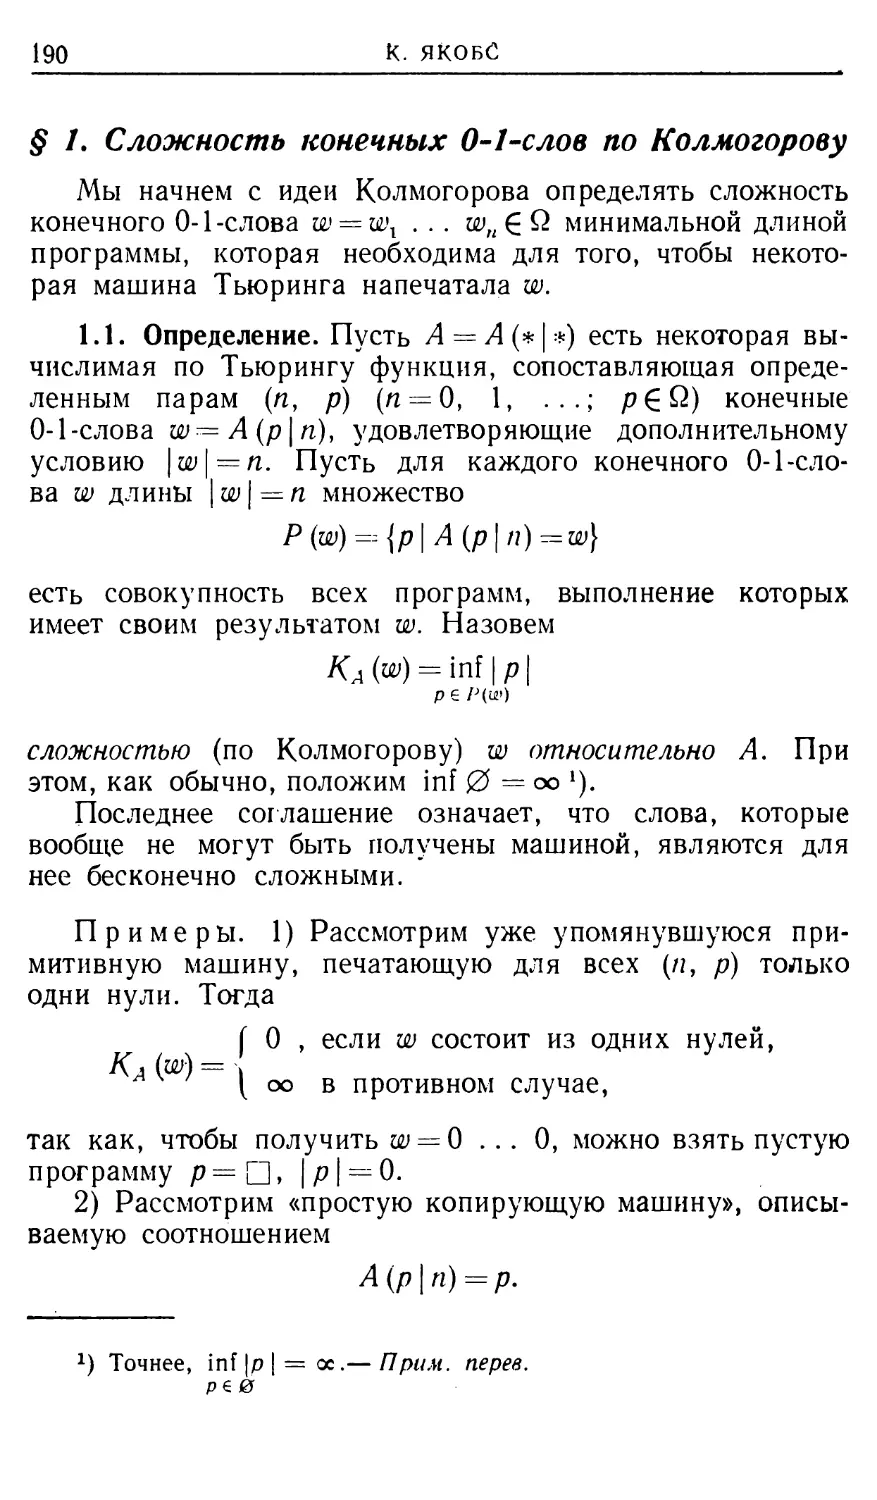 § 1. Сложность конечных 0-1-слов по Колмогорову